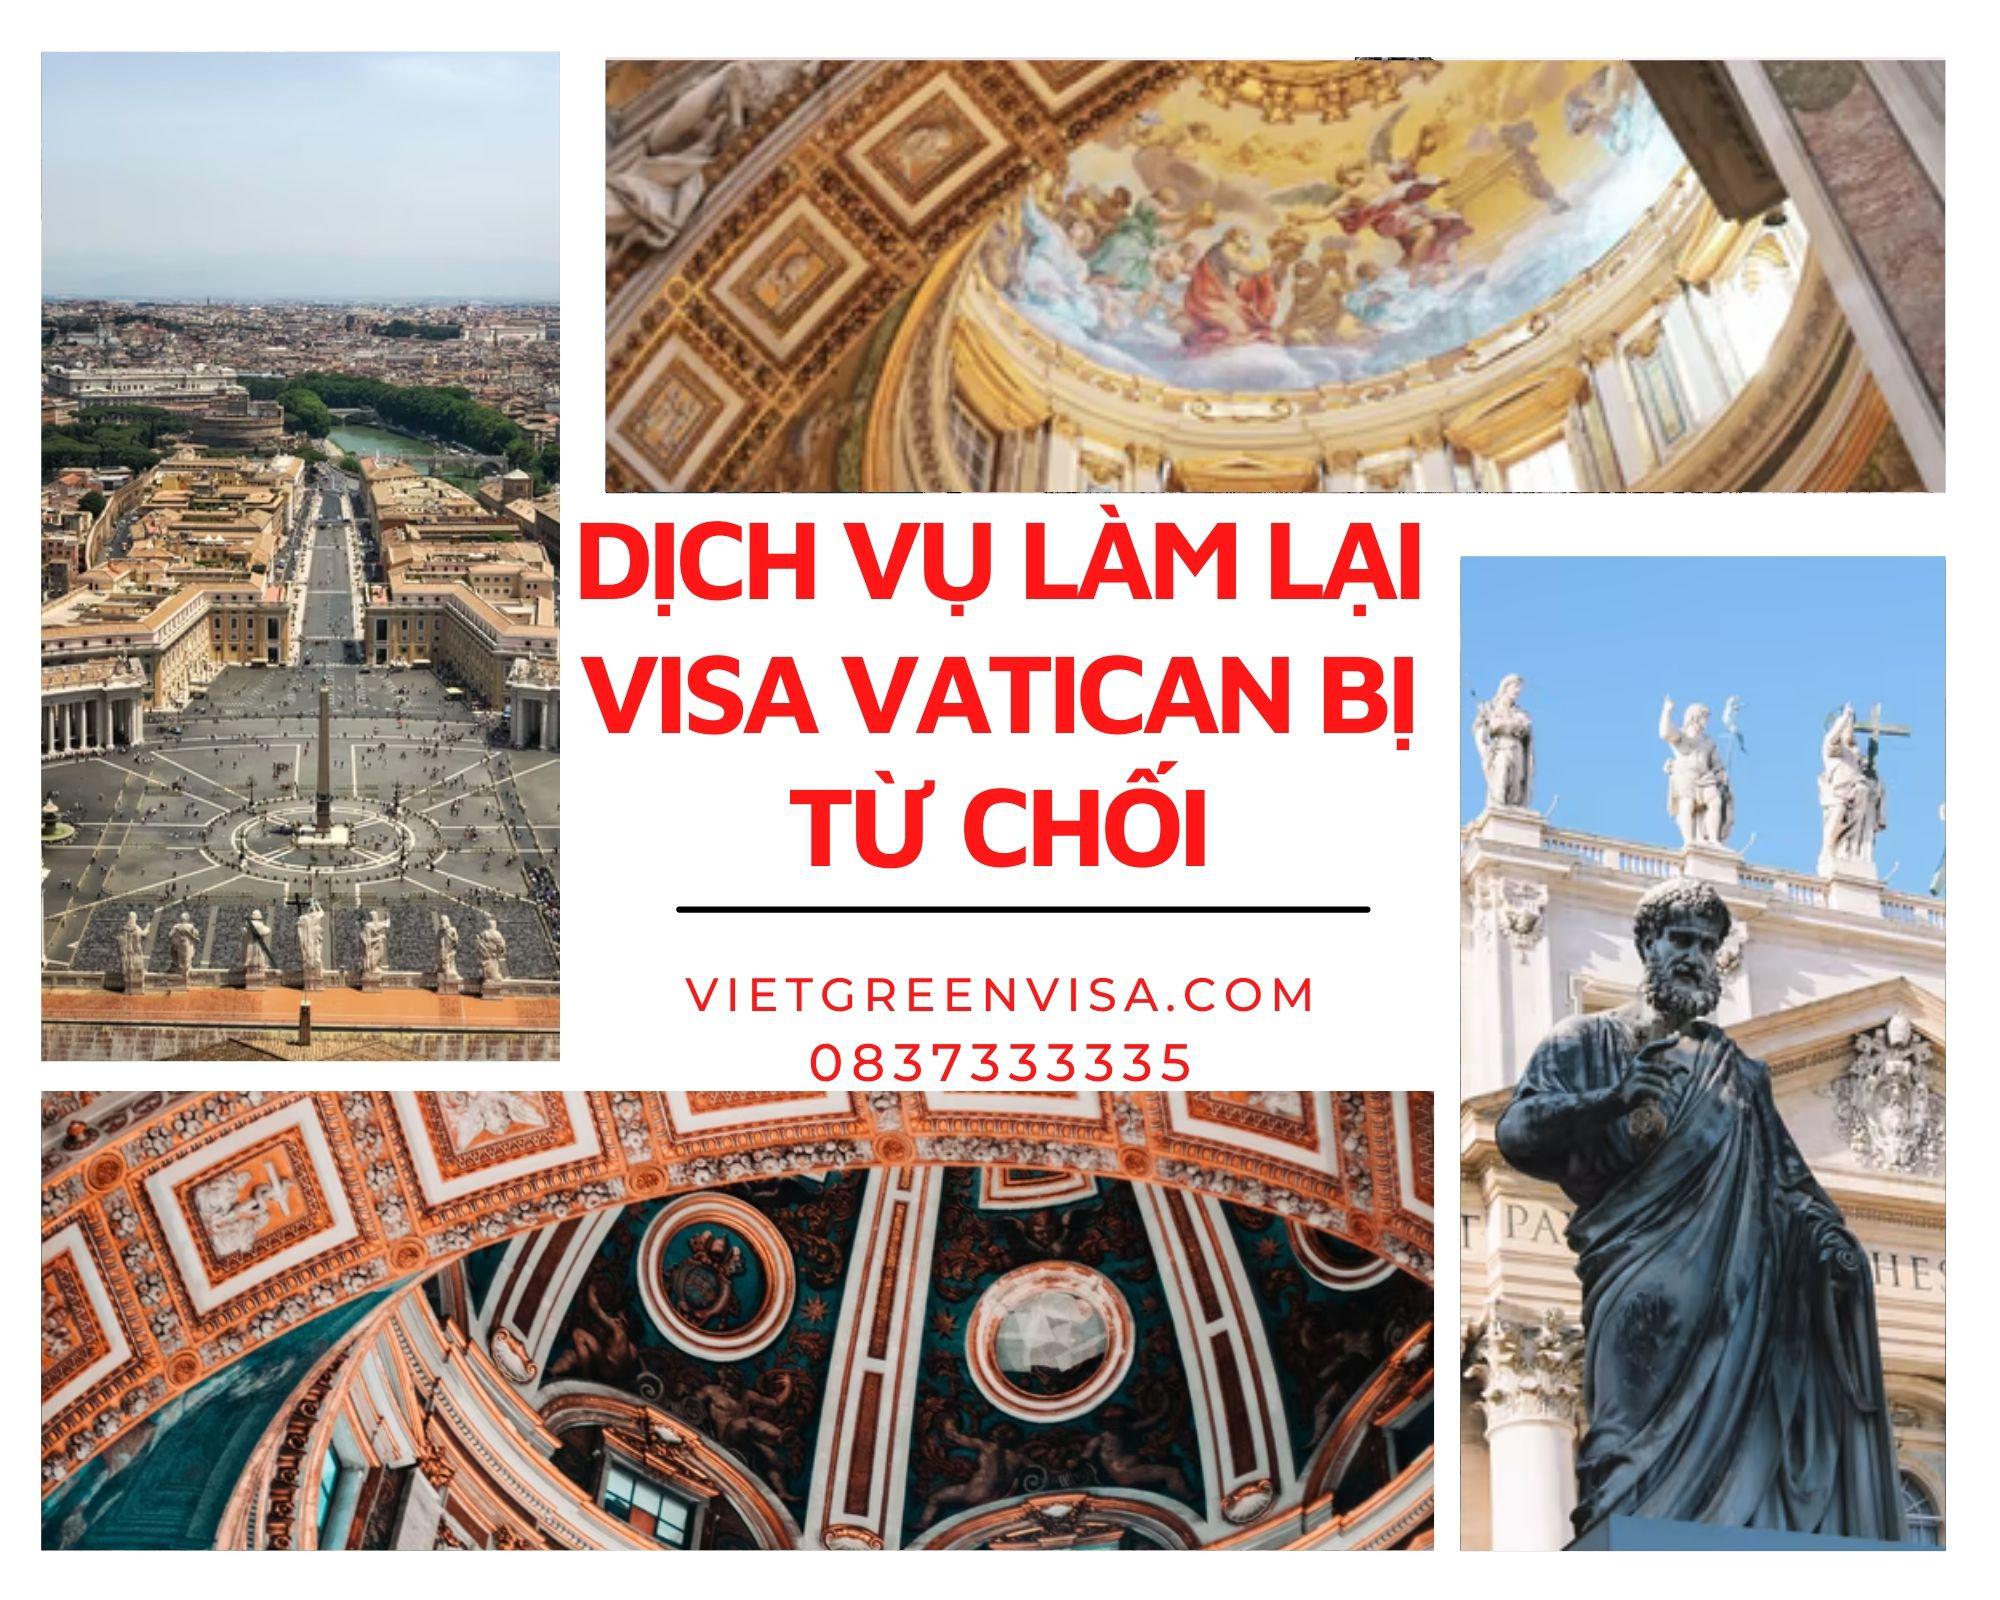 Xử lý visa Vatican bị từ chối trọn gói